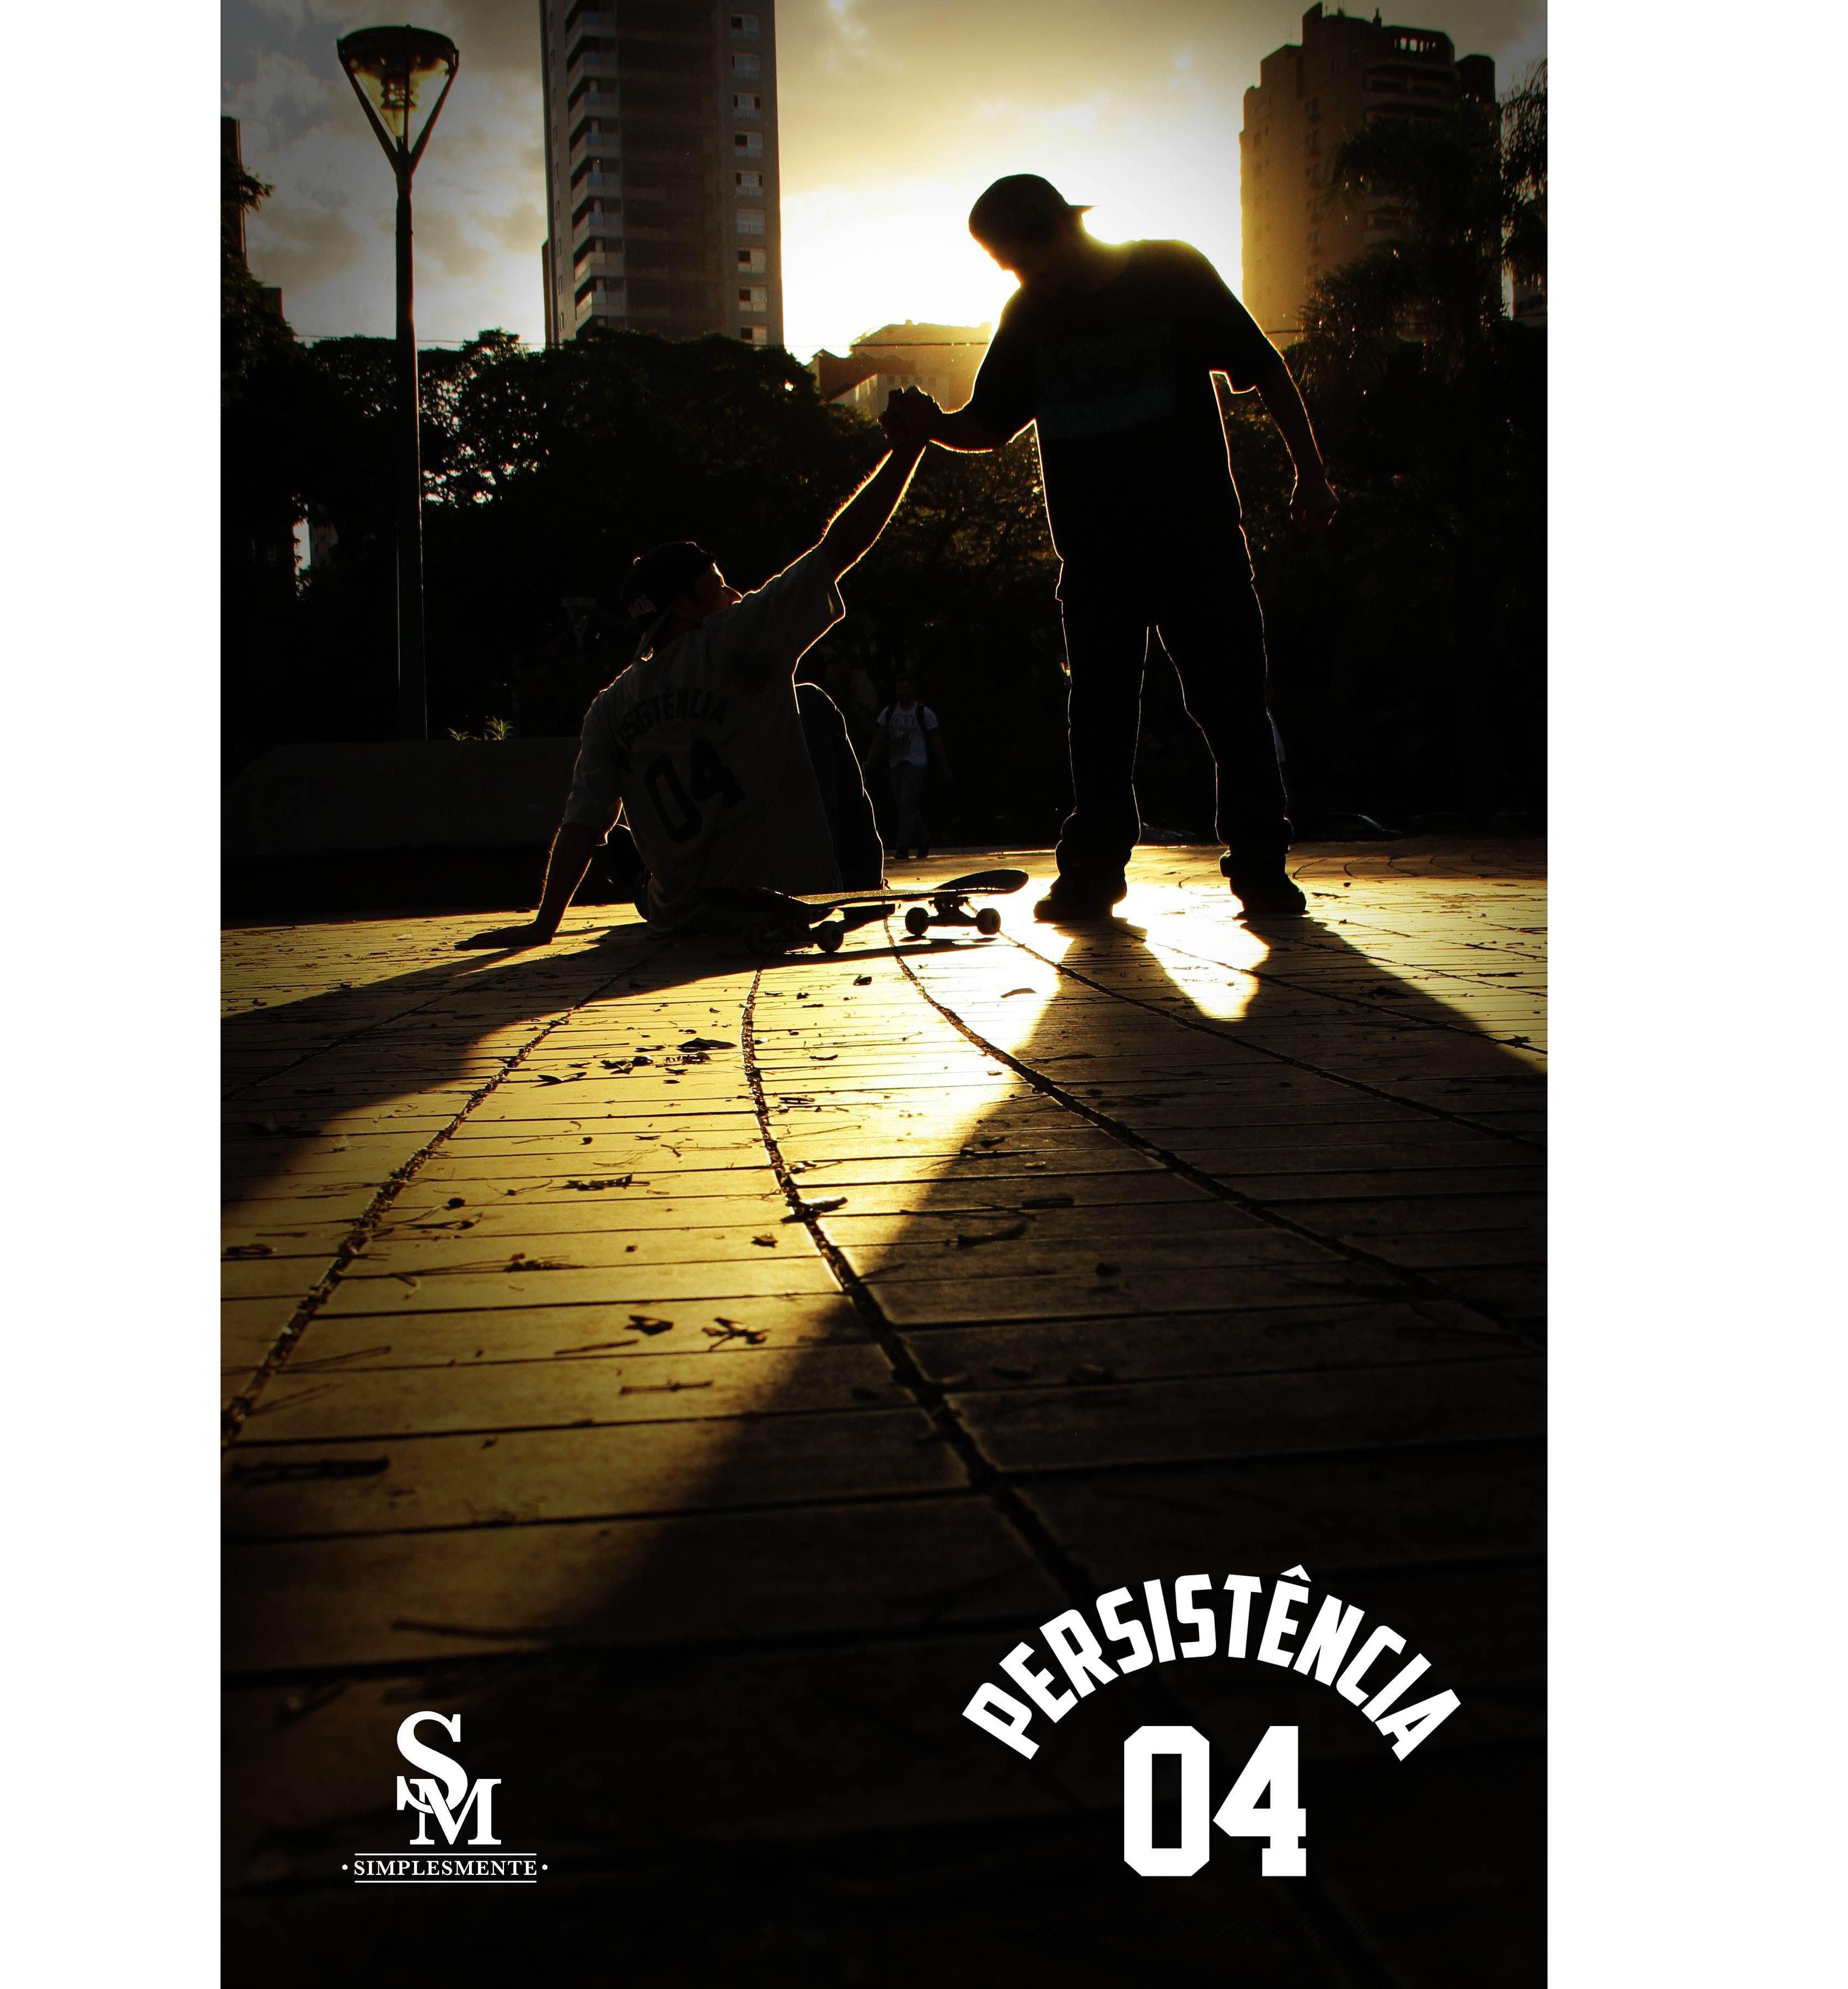 Simplesmente - Persistência 04 cover